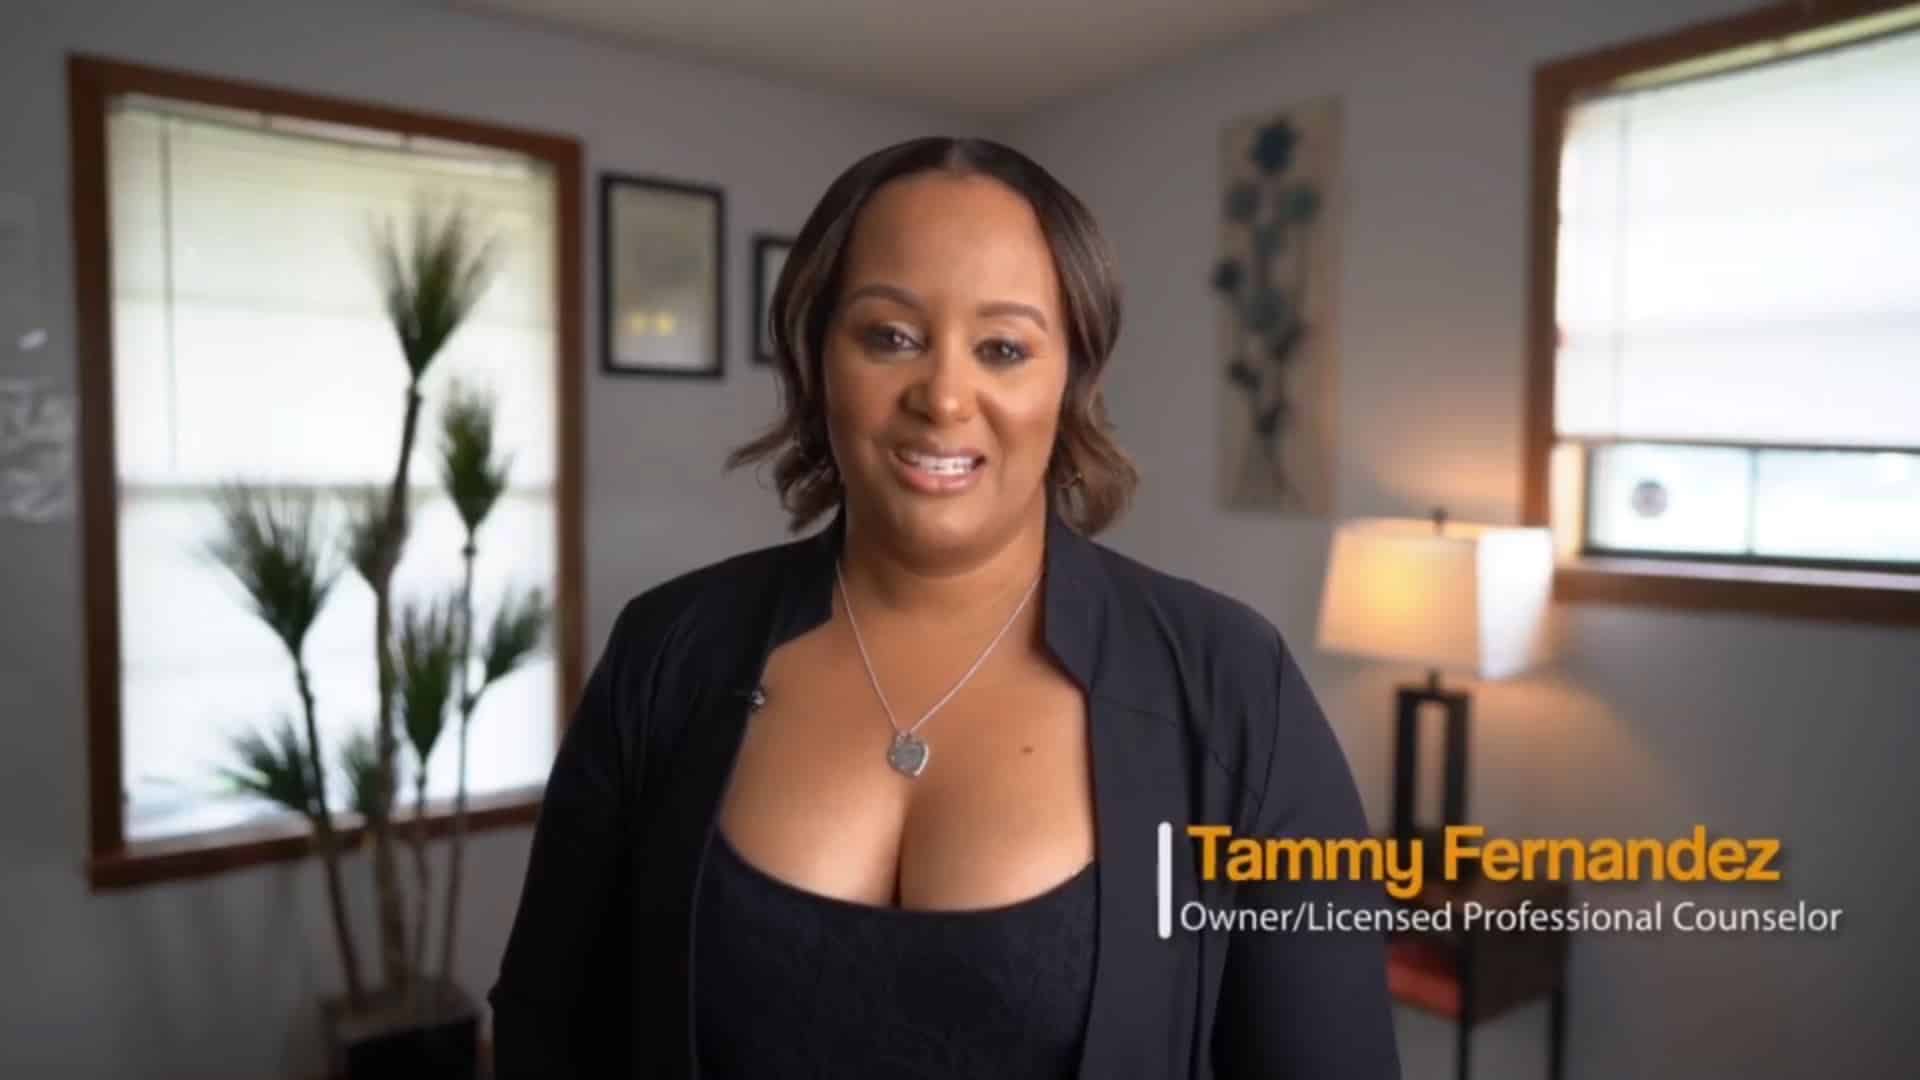 Miss Tammy